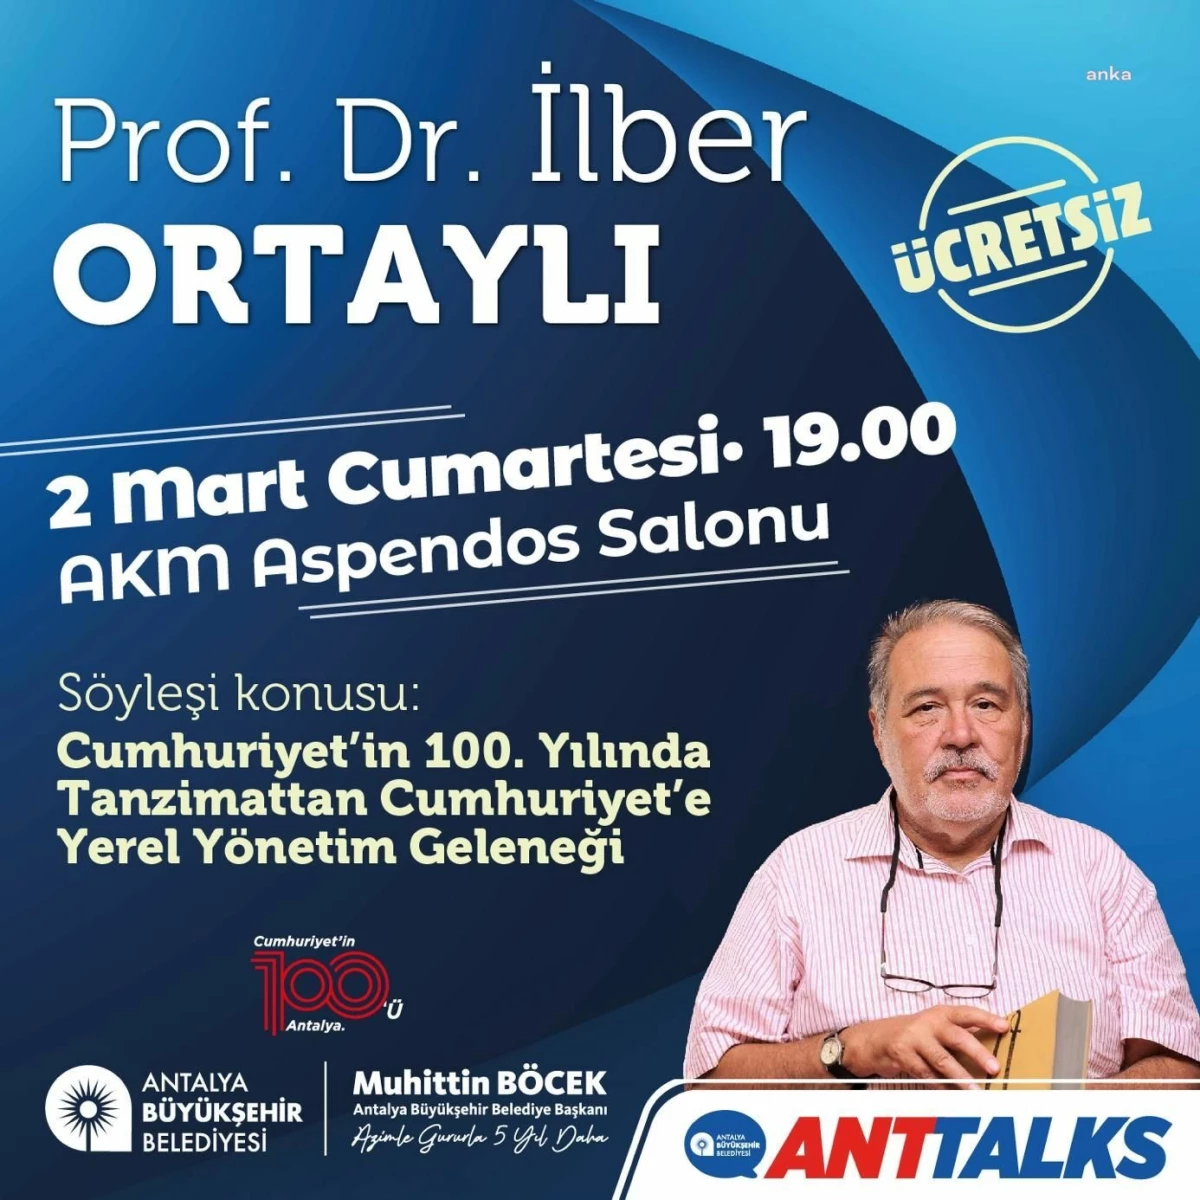 Antalya Büyükşehir Belediyesi Anttalks Etkinliği: İlber Ortaylı ile Söyleşi